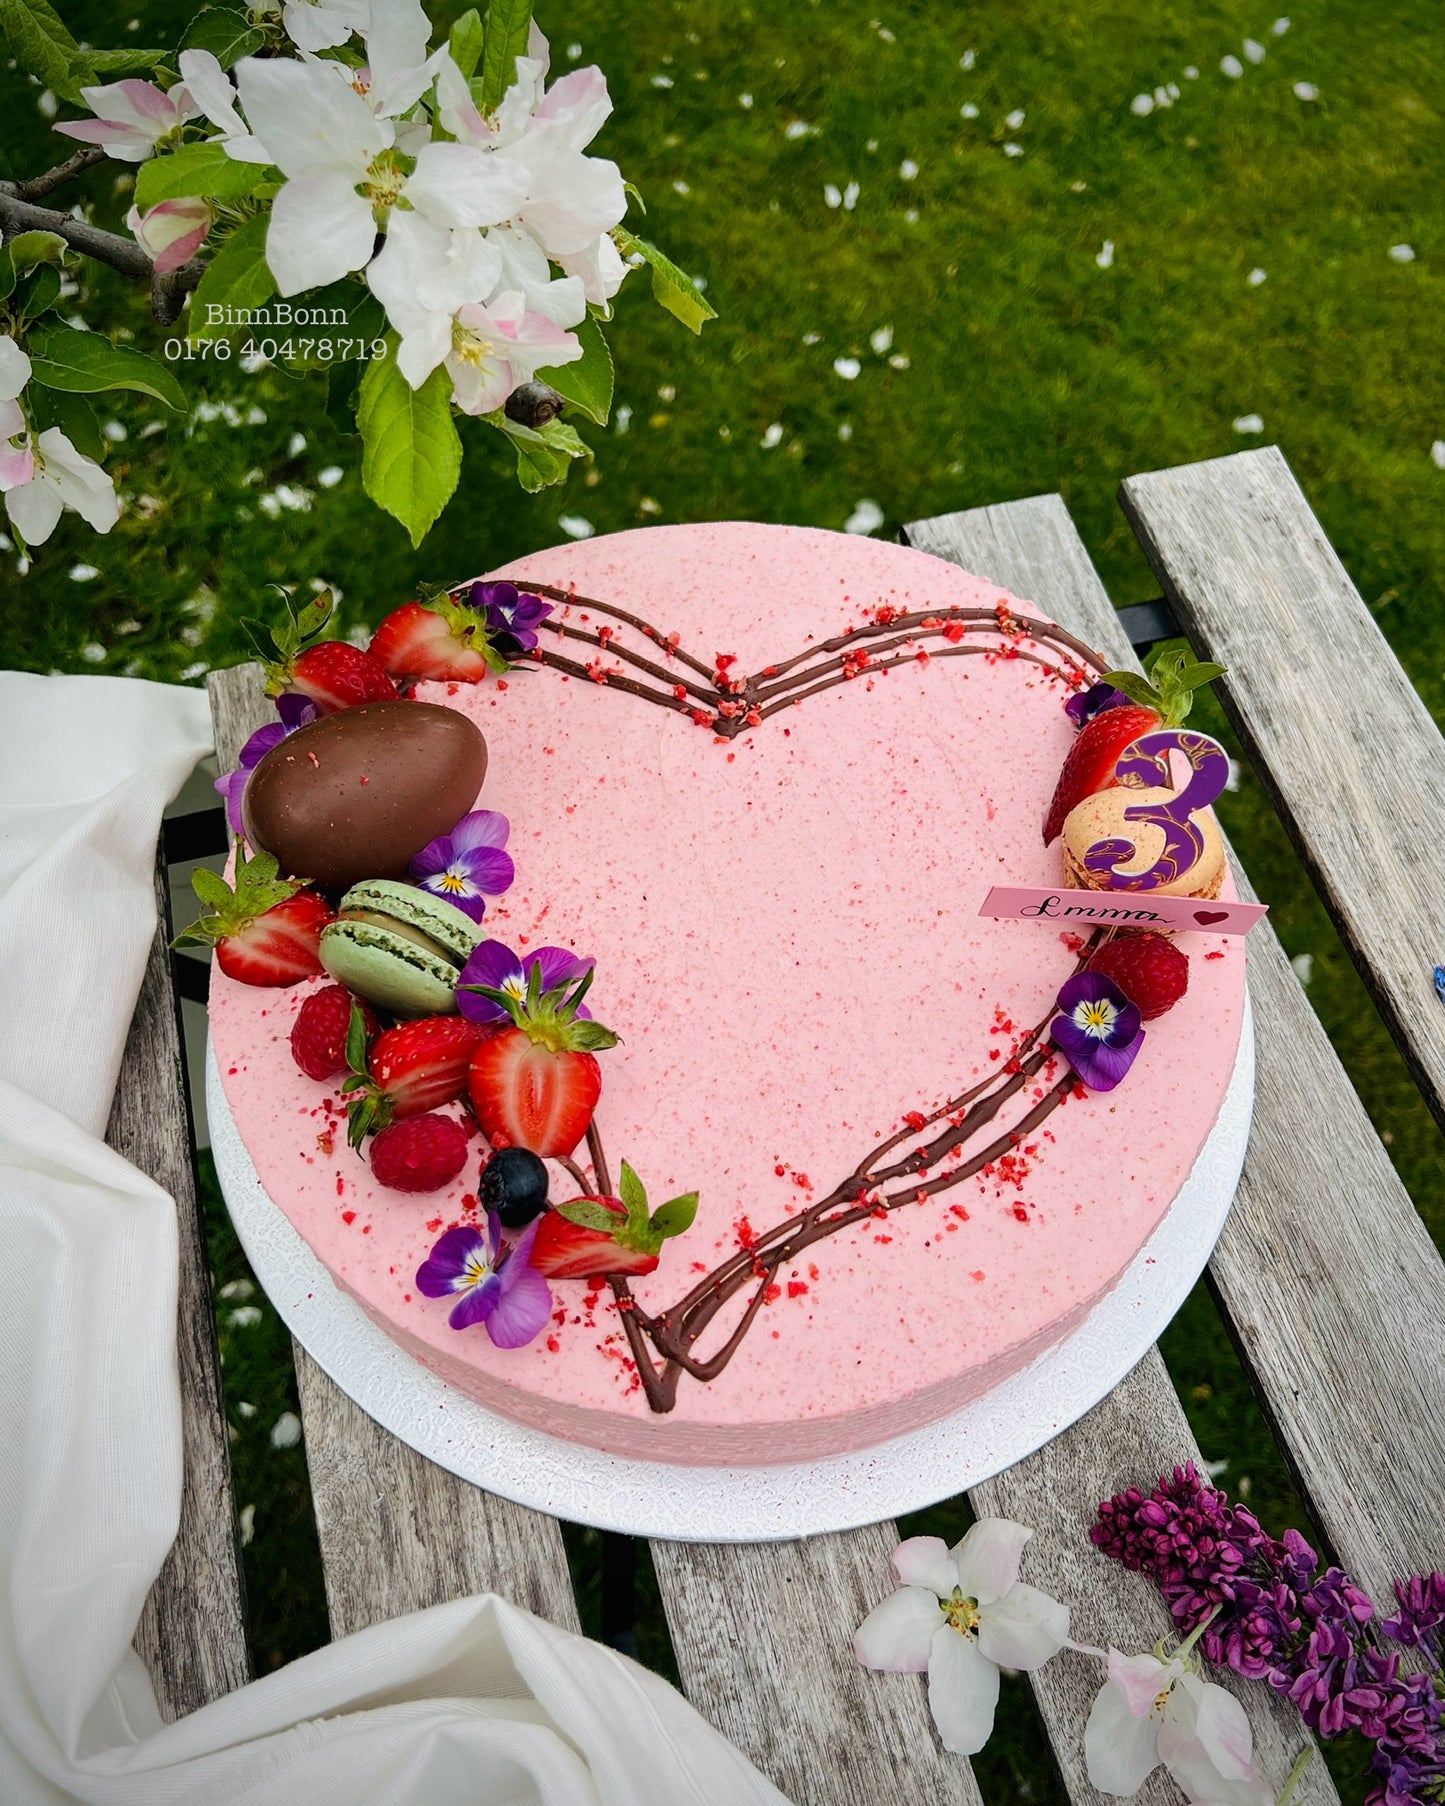 63. Torte "Love you" mit frischen Beeren und Kinder Überraschungsei 26 cm